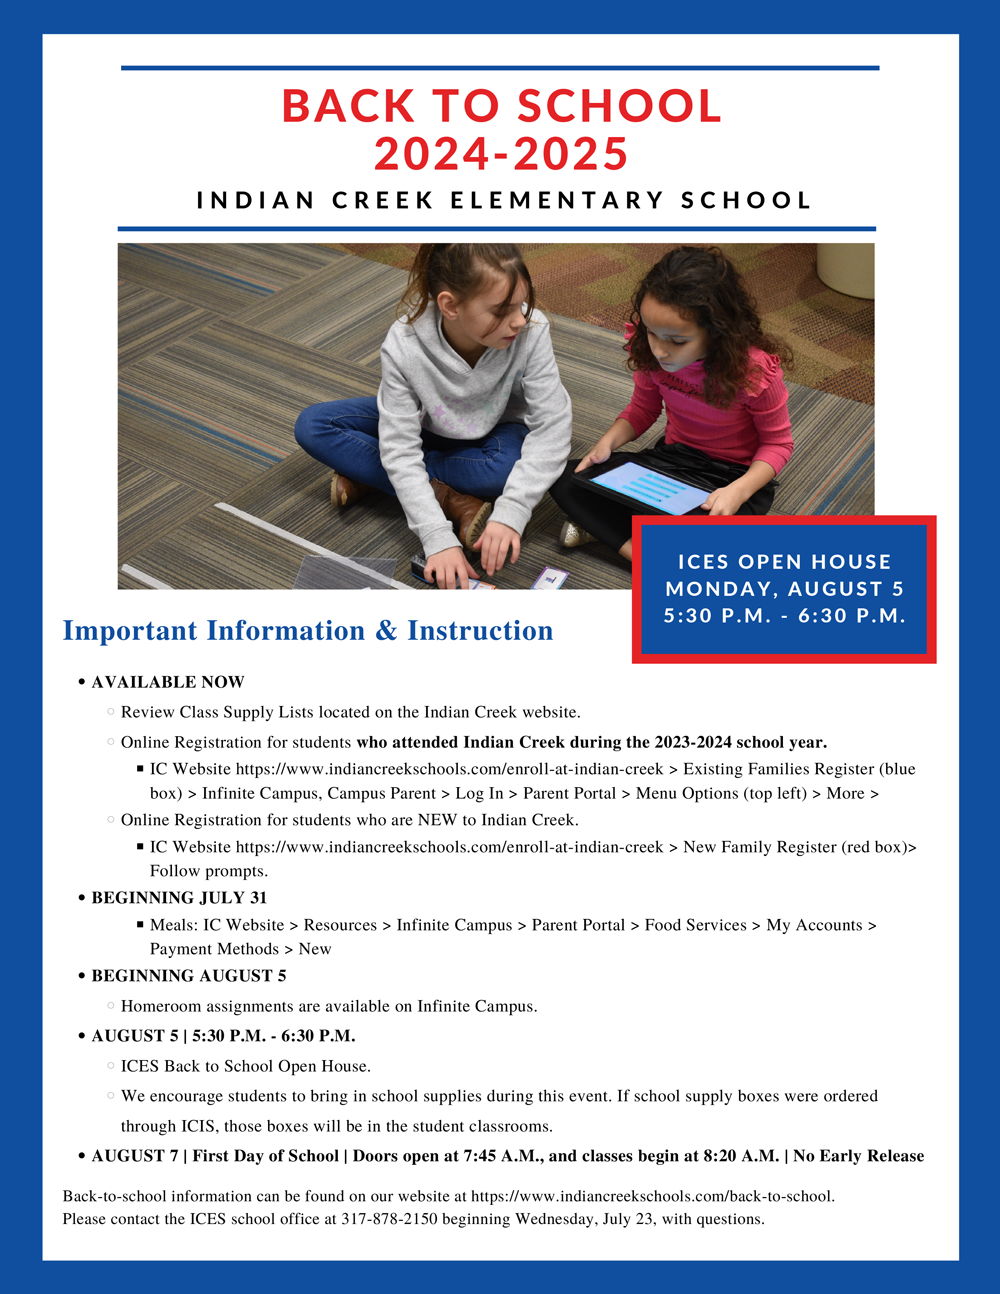 Indian Creek Schools